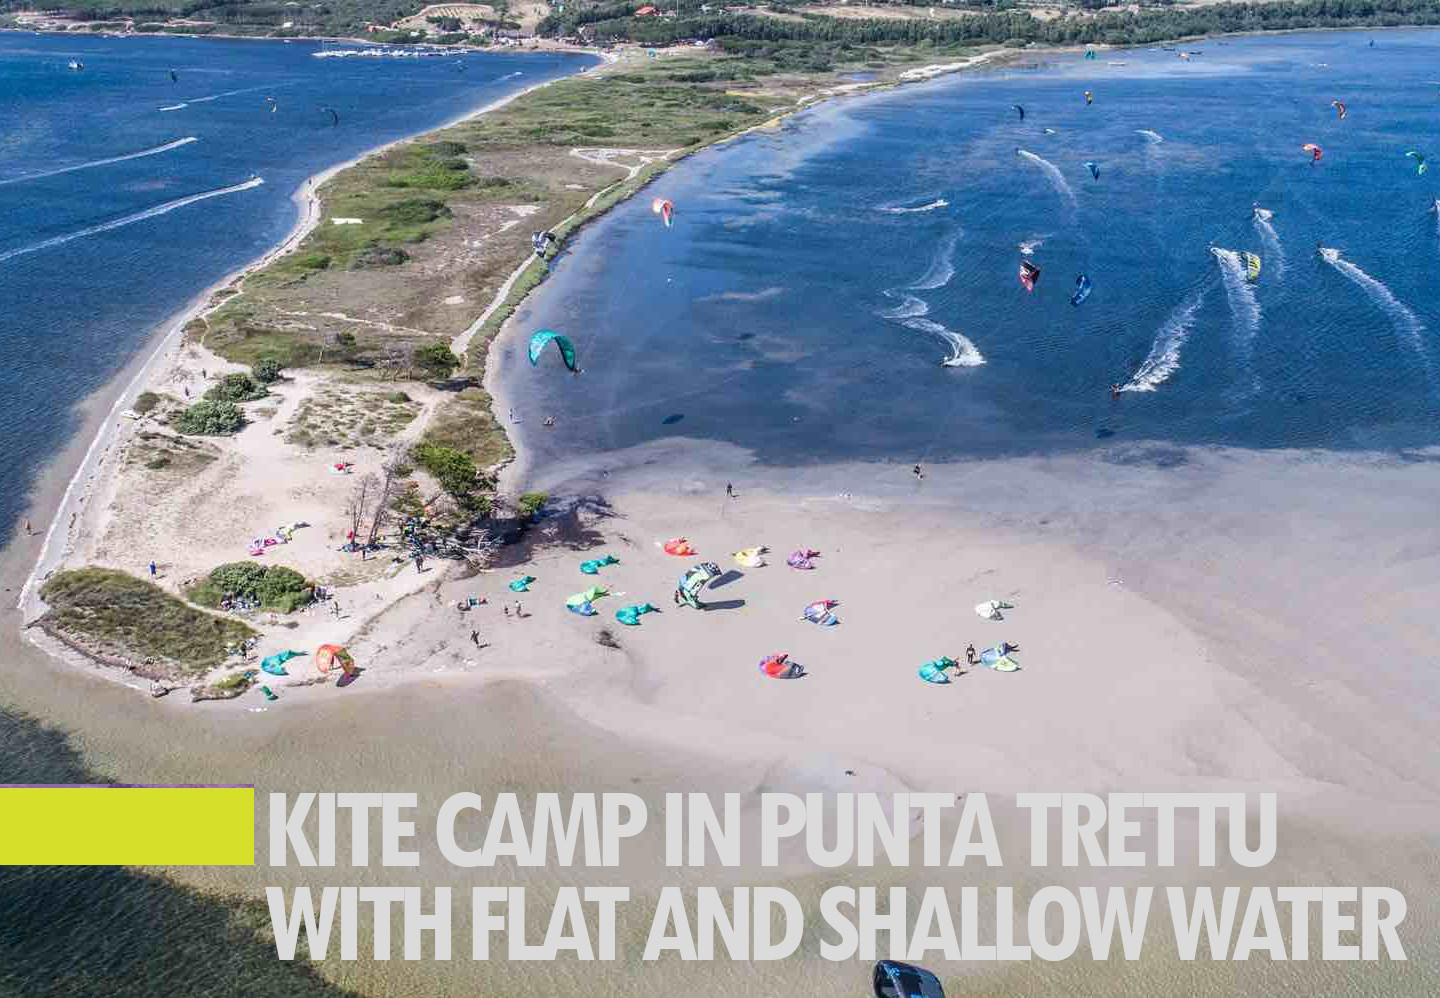 Kitesurf Camp in Punta Trettu